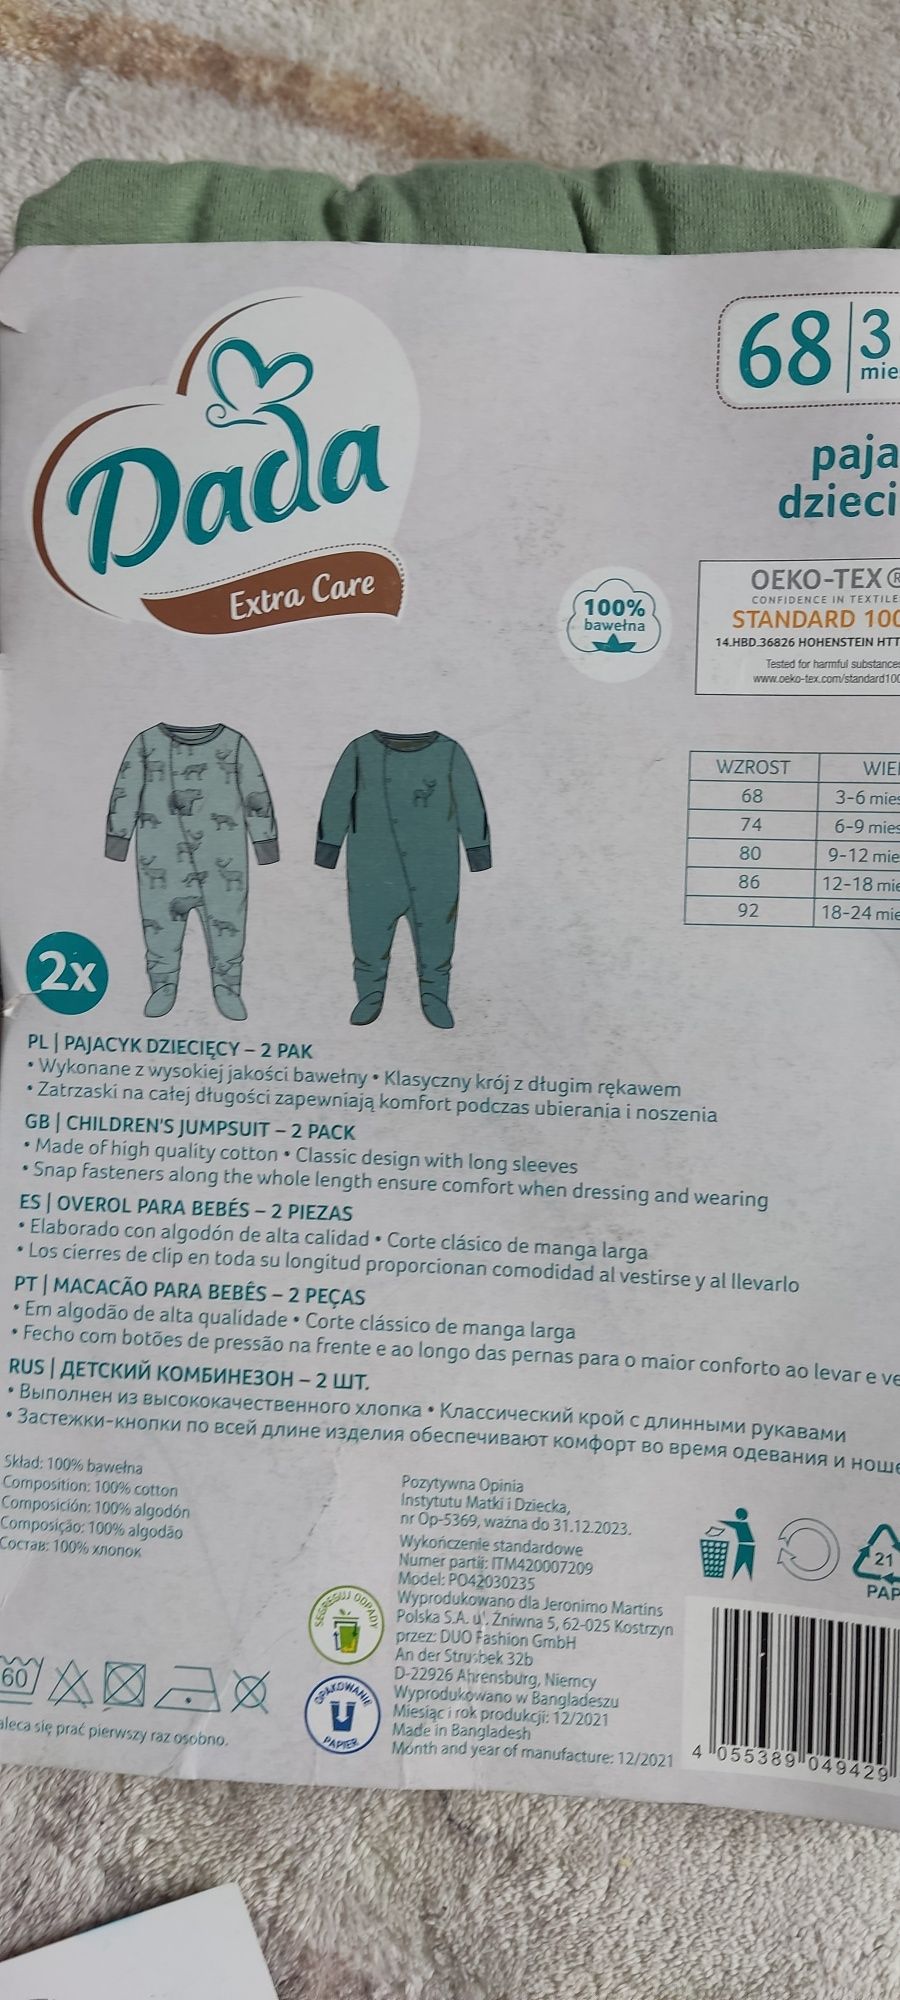 Pajac śpiochy piżama body niemowlęce r 68 zestaw 5szt dada